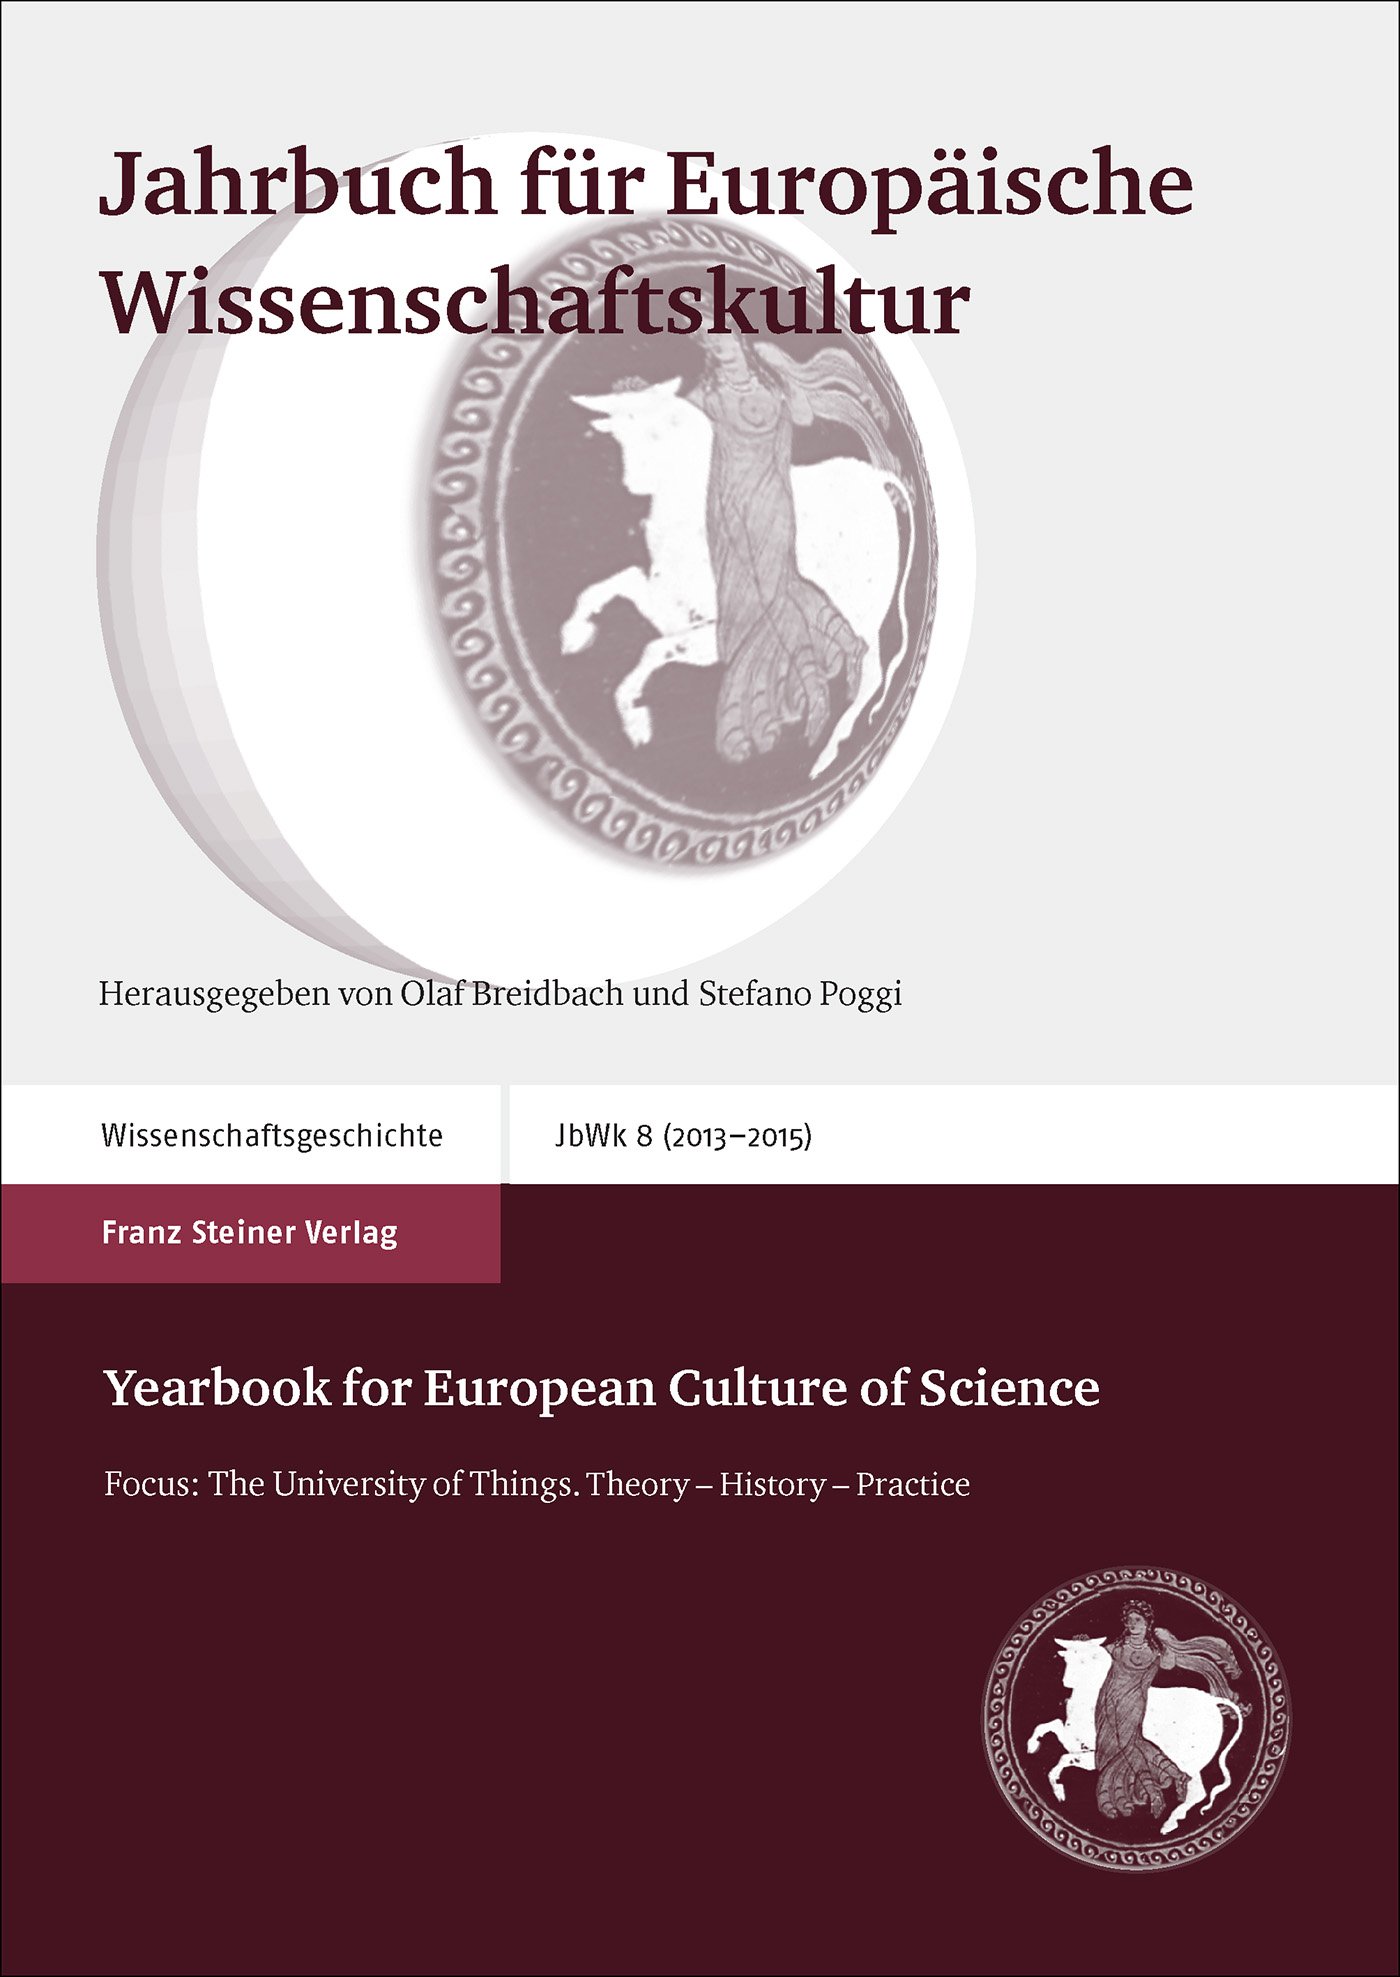 Jahrbuch für Europäische Wissenschaftskultur 8 (2013–2015)